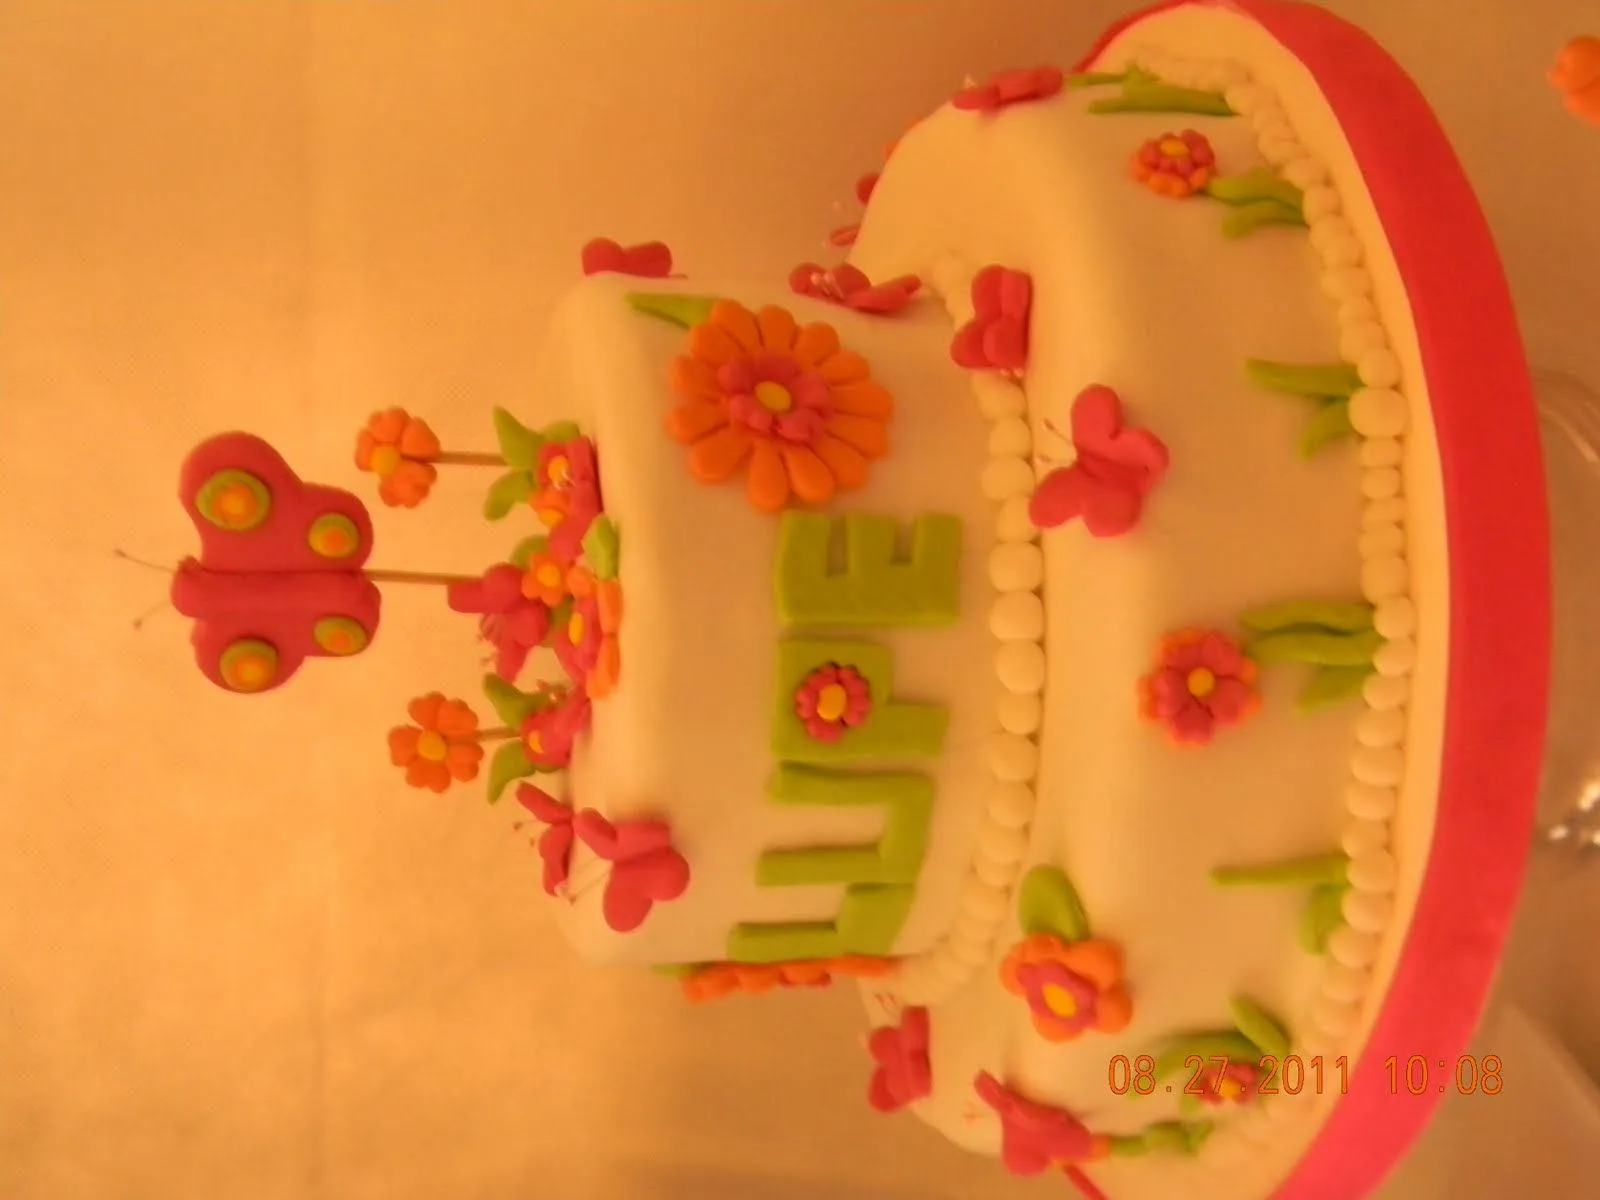  ... esta hermosa torta y cup cakes haciendo juego de flores y mariposas